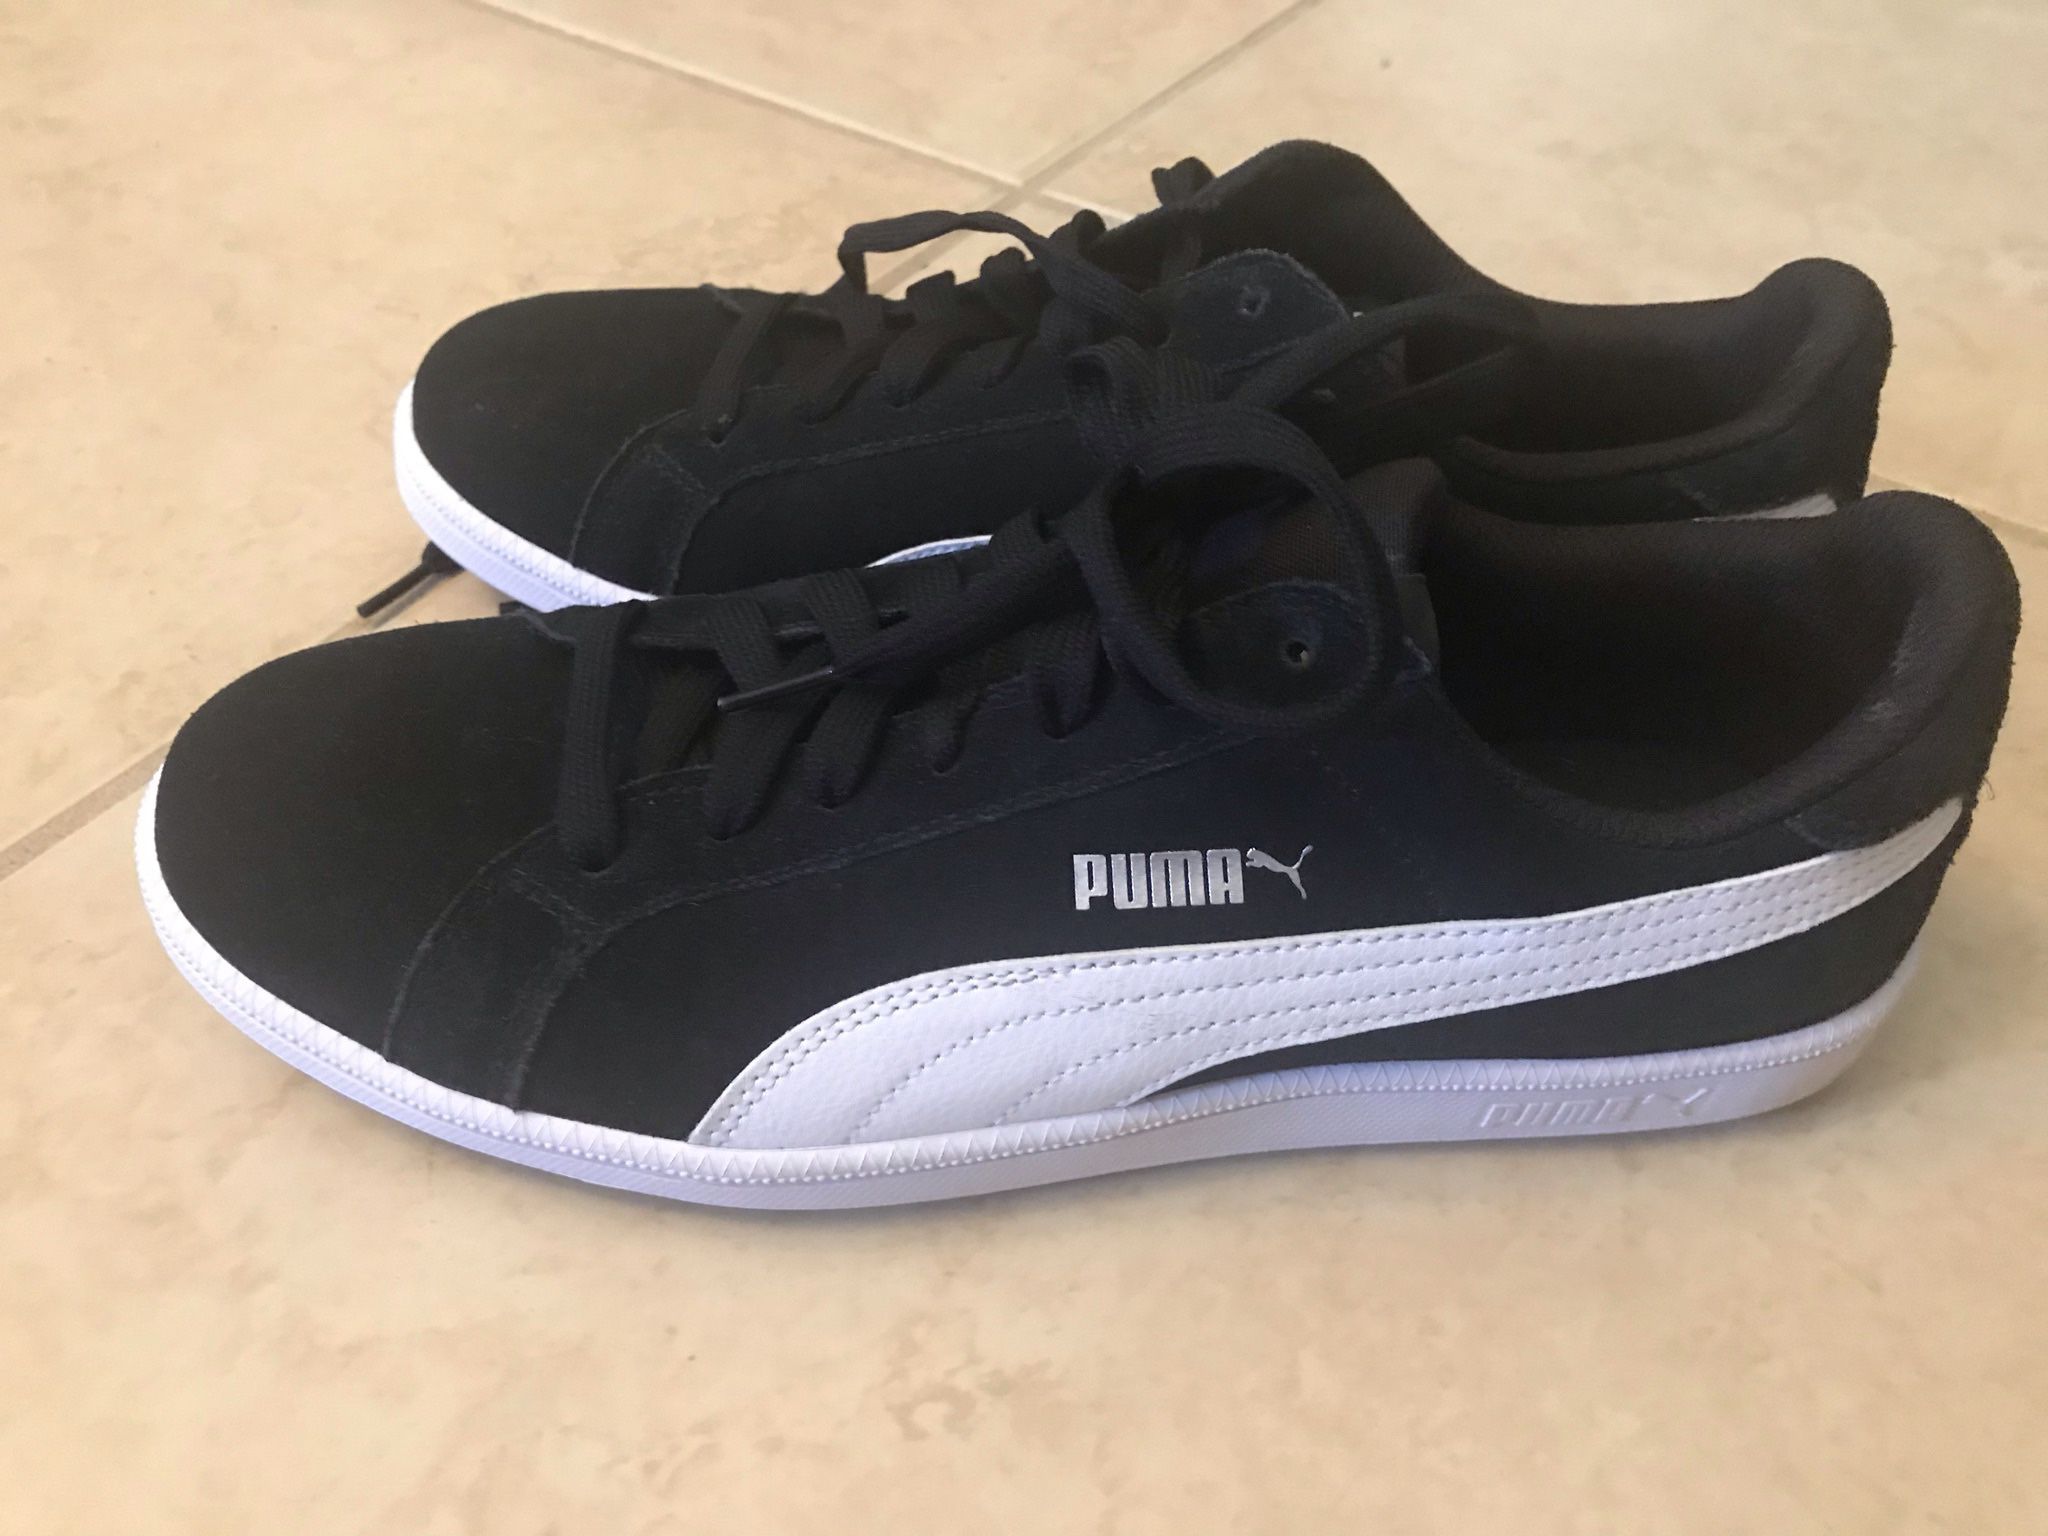 Puma Size 9 New